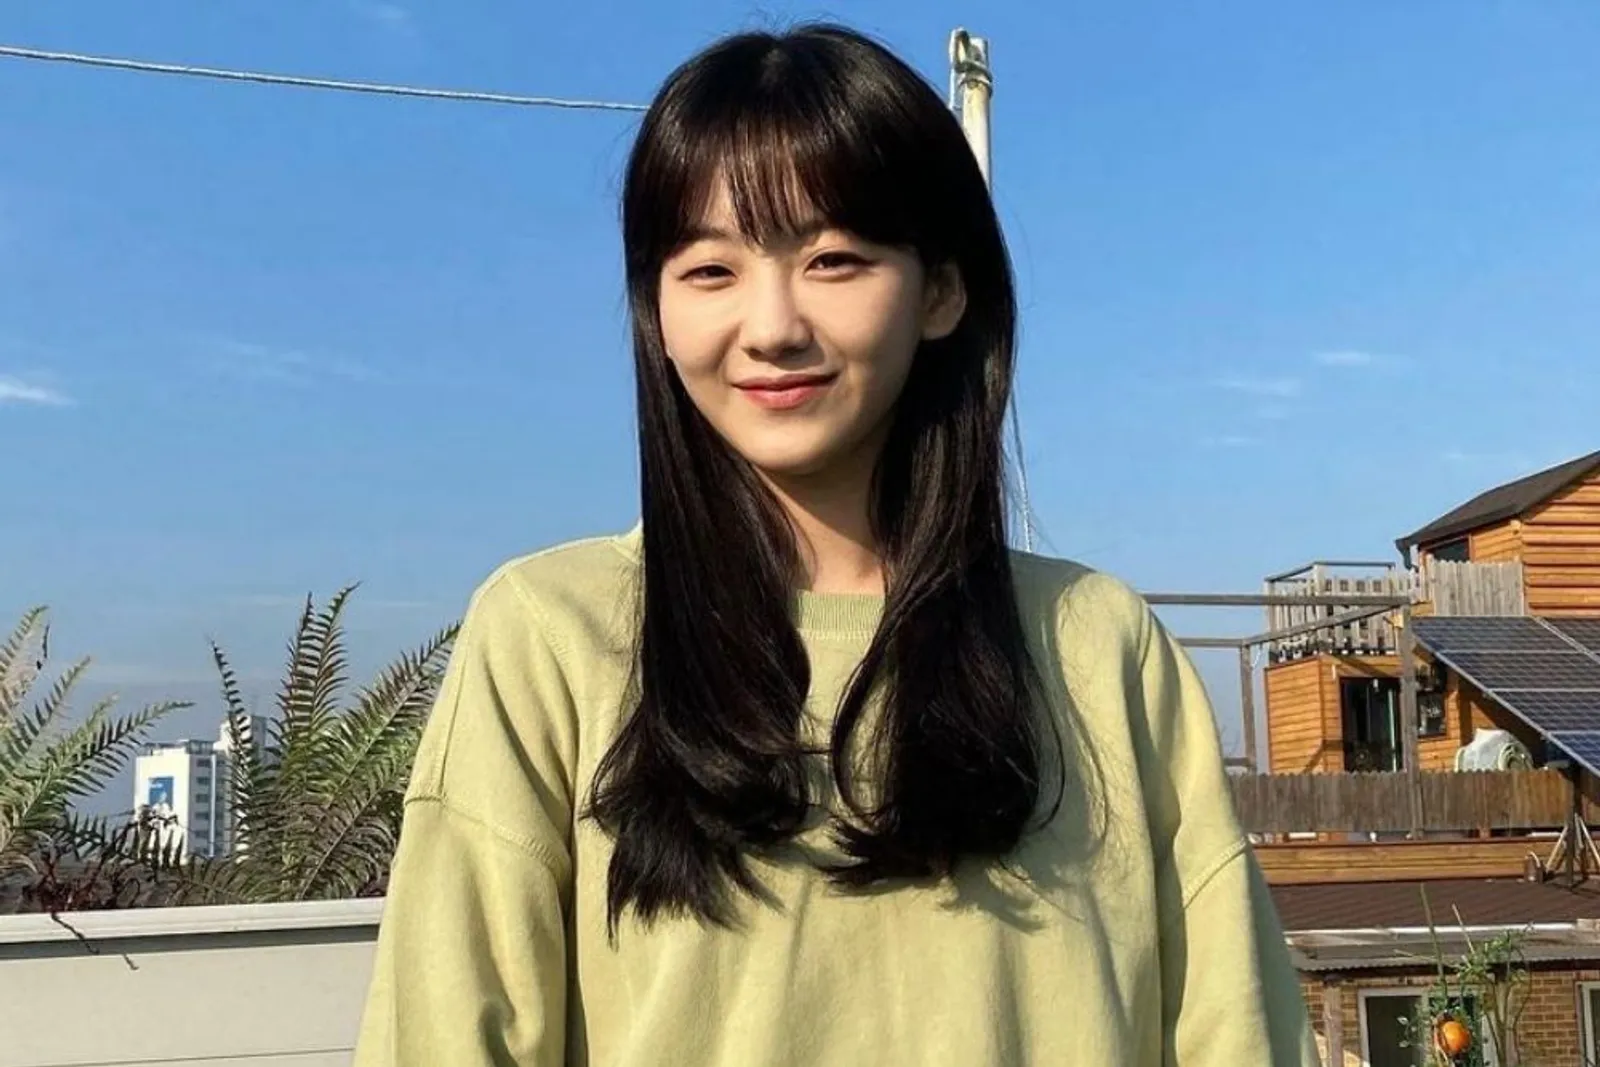 Pesona Cho Yi Hyun, Ketua Kelas Imut di Serial 'All of Us are Dead'